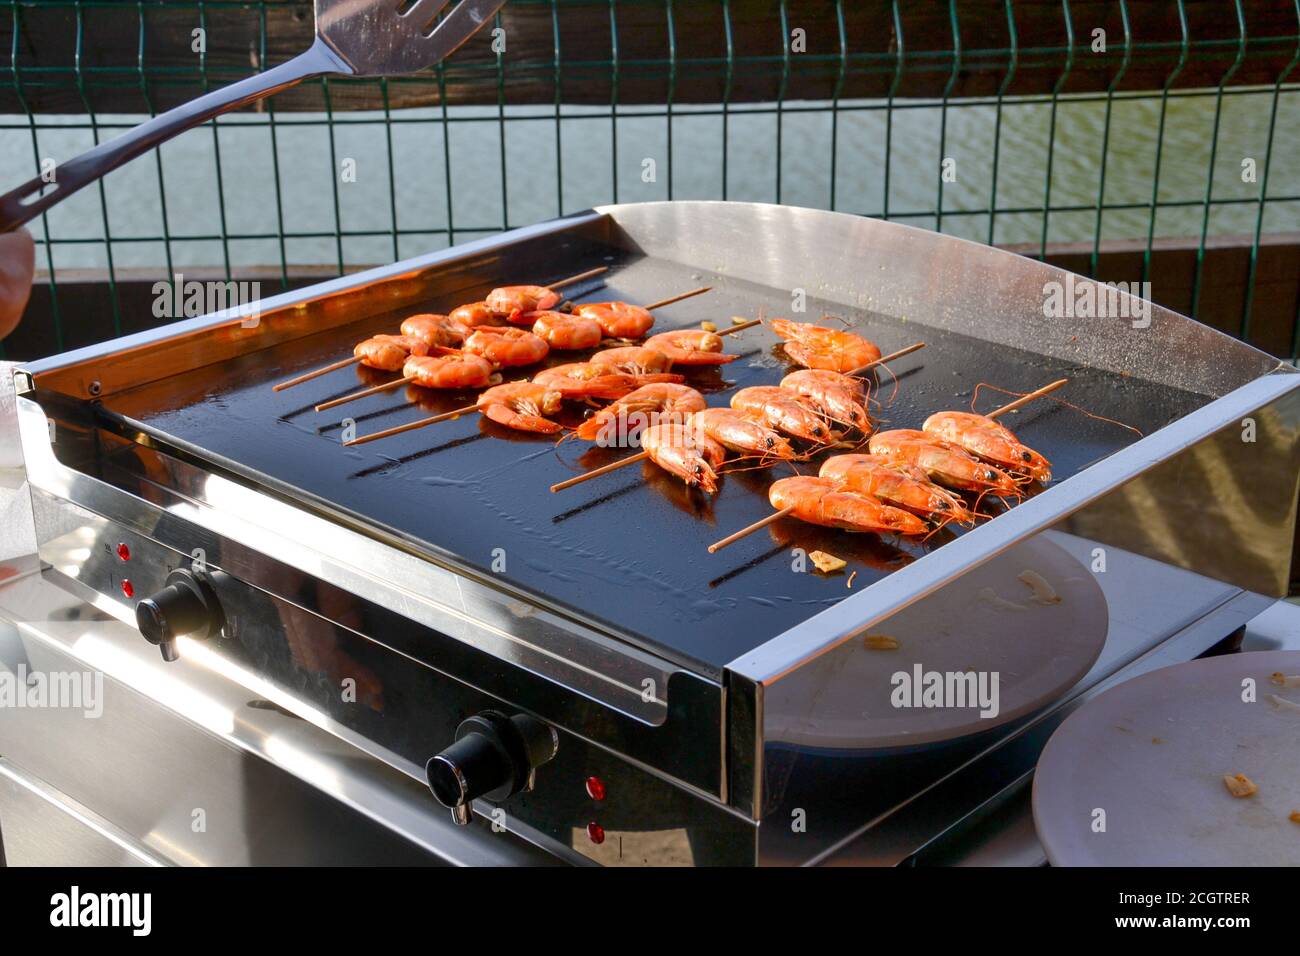 Cucina gamberi tigre sulla griglia elettrica per barbecue. Grill